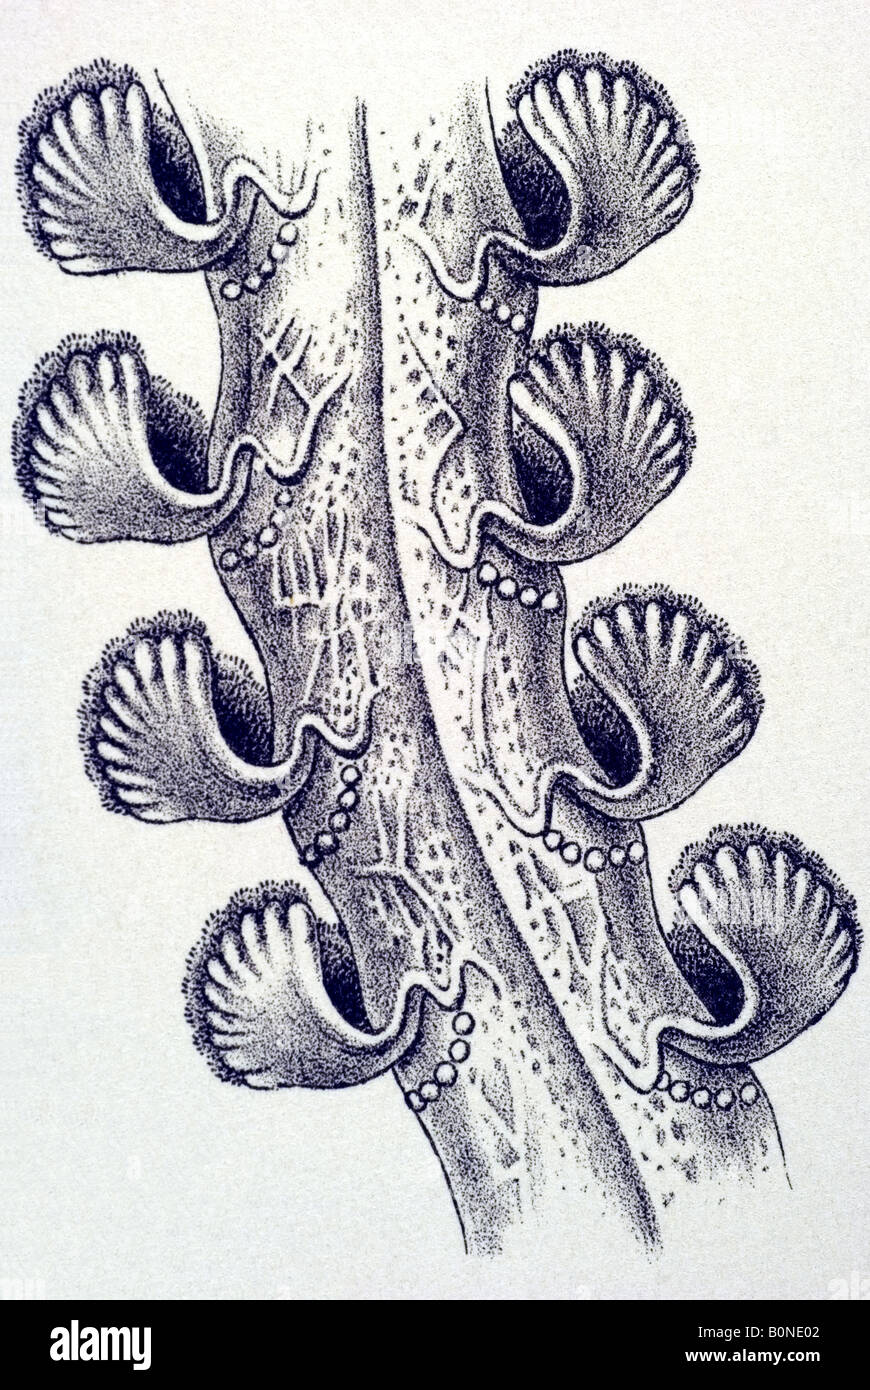 Pennatulida, Federkorallen Name Virgularia Rumphii, Haeckel art nouveau 20th century Europe Stock Photo